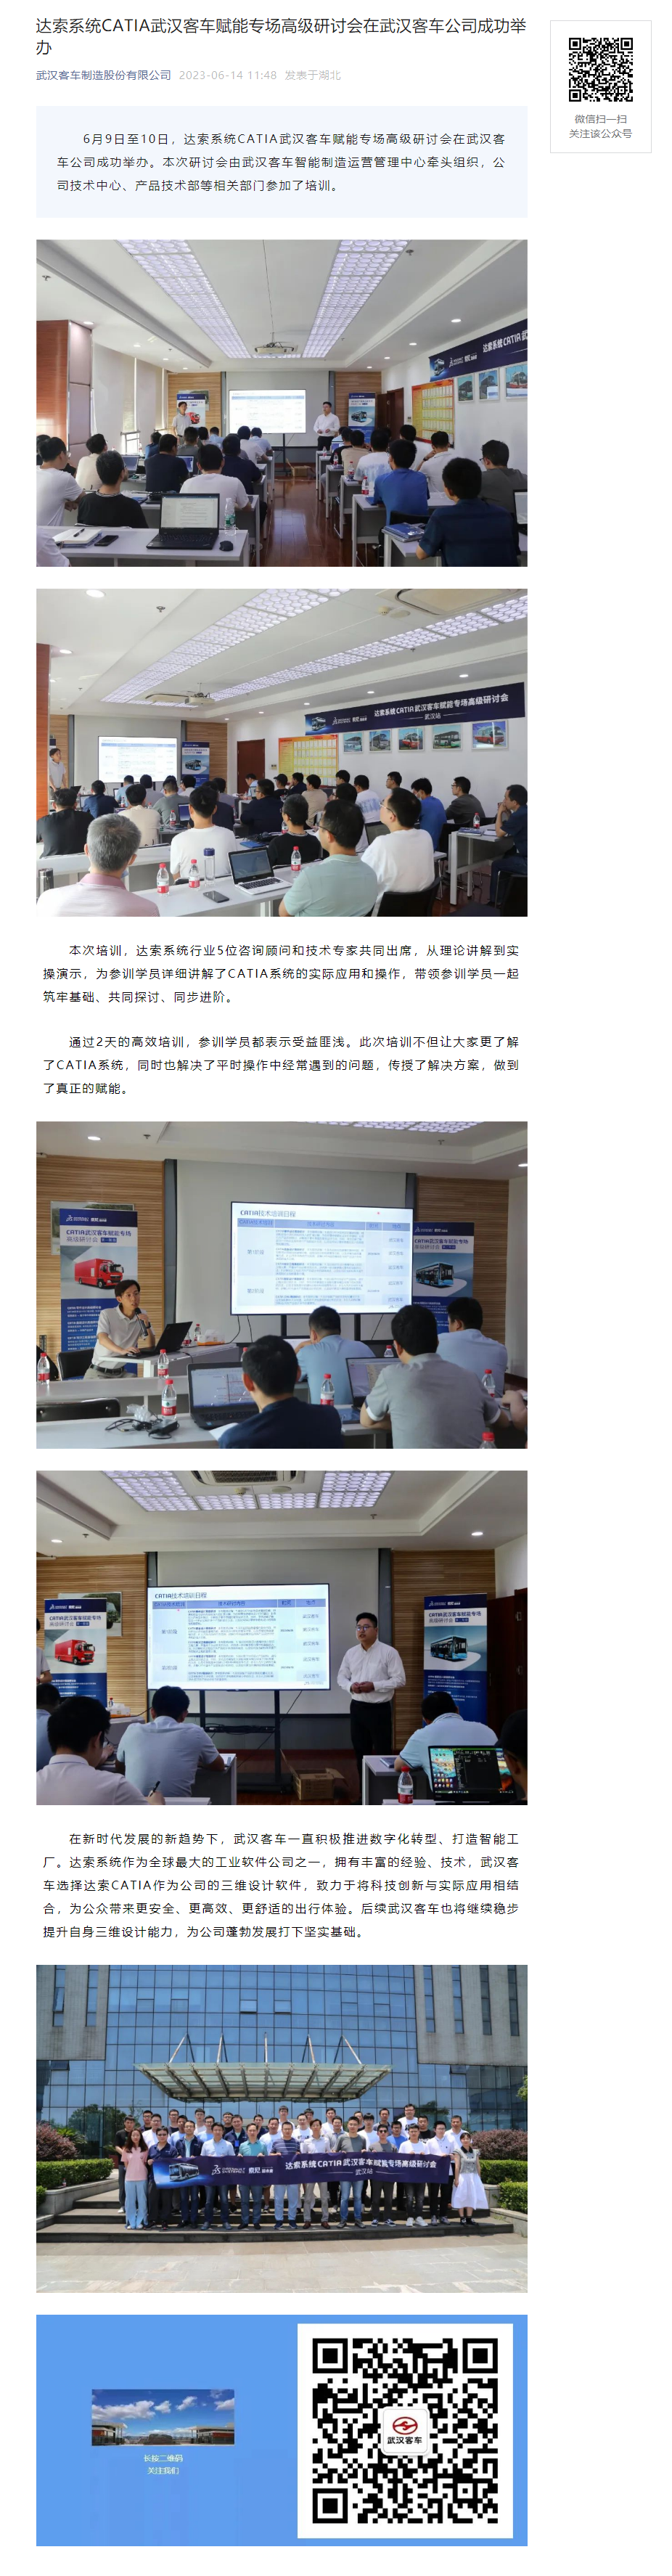 达索系统CATIA武汉客车赋能专场高级研讨会在武汉客车公司成功举办.png